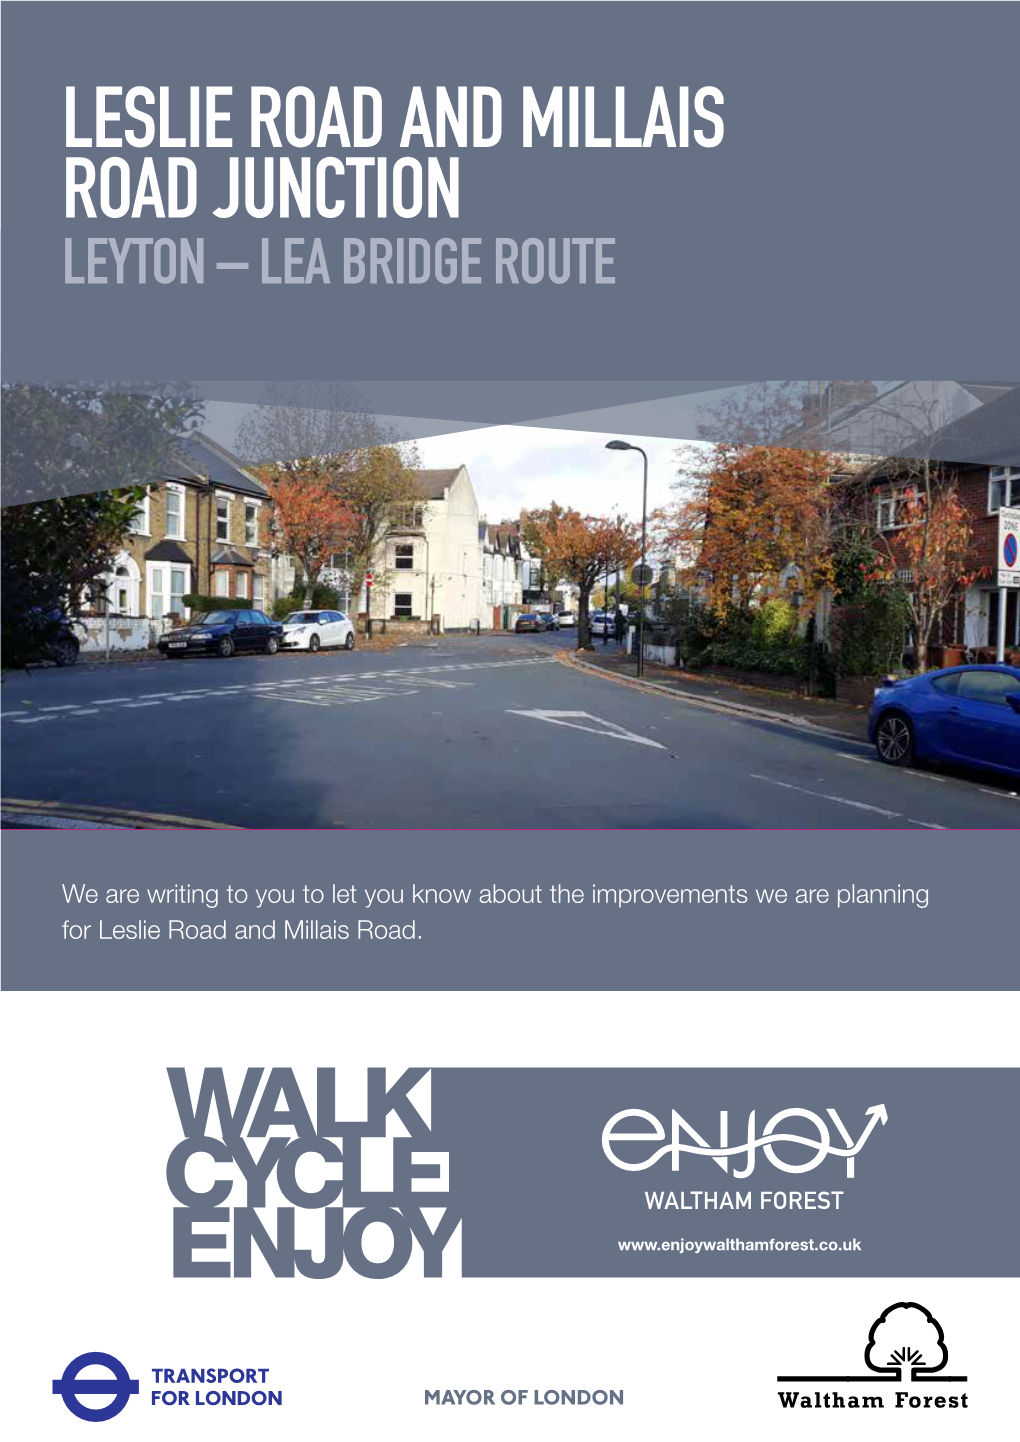 Leslie Road and Millais Road Junction Leyton – Lea Bridge Route